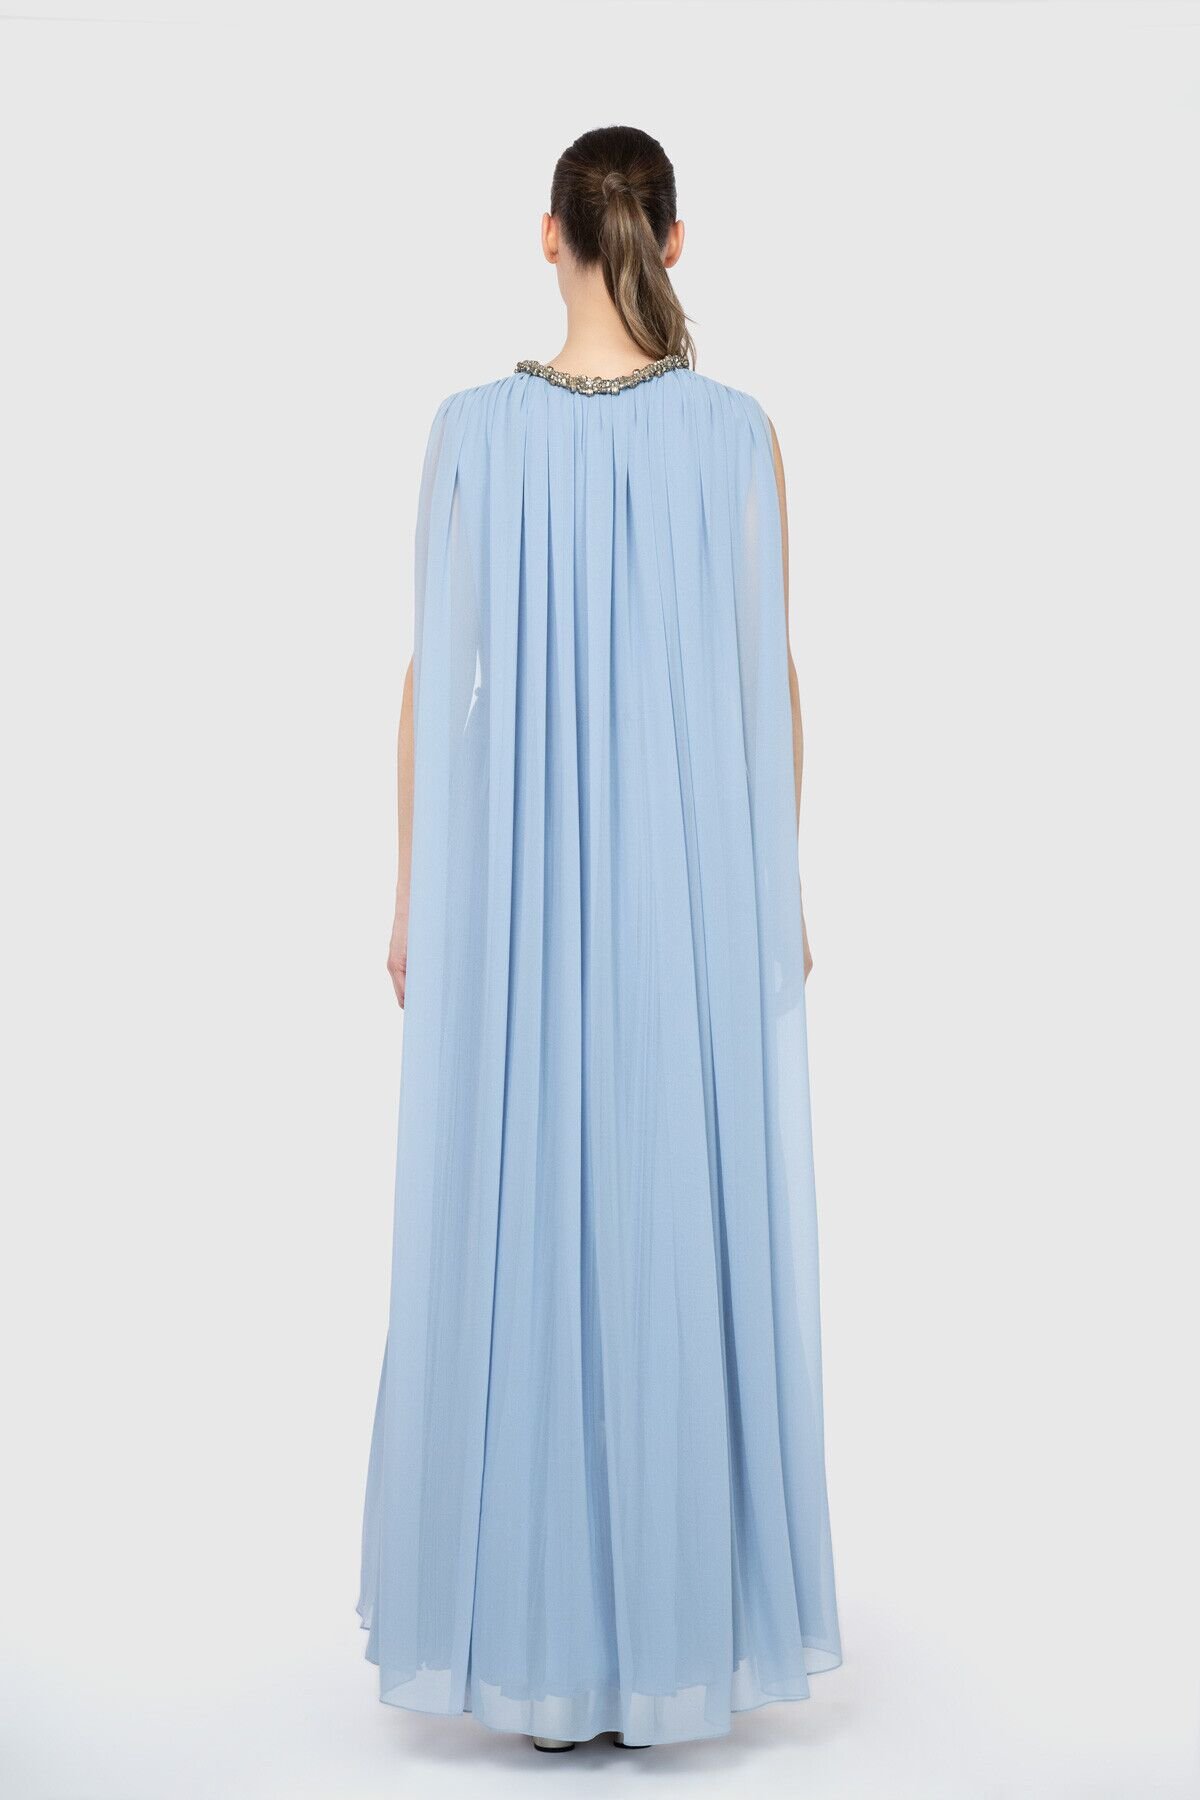 Dice Kayek V Yaka İşlemeli Pilise Mavi Tasarım Elbise